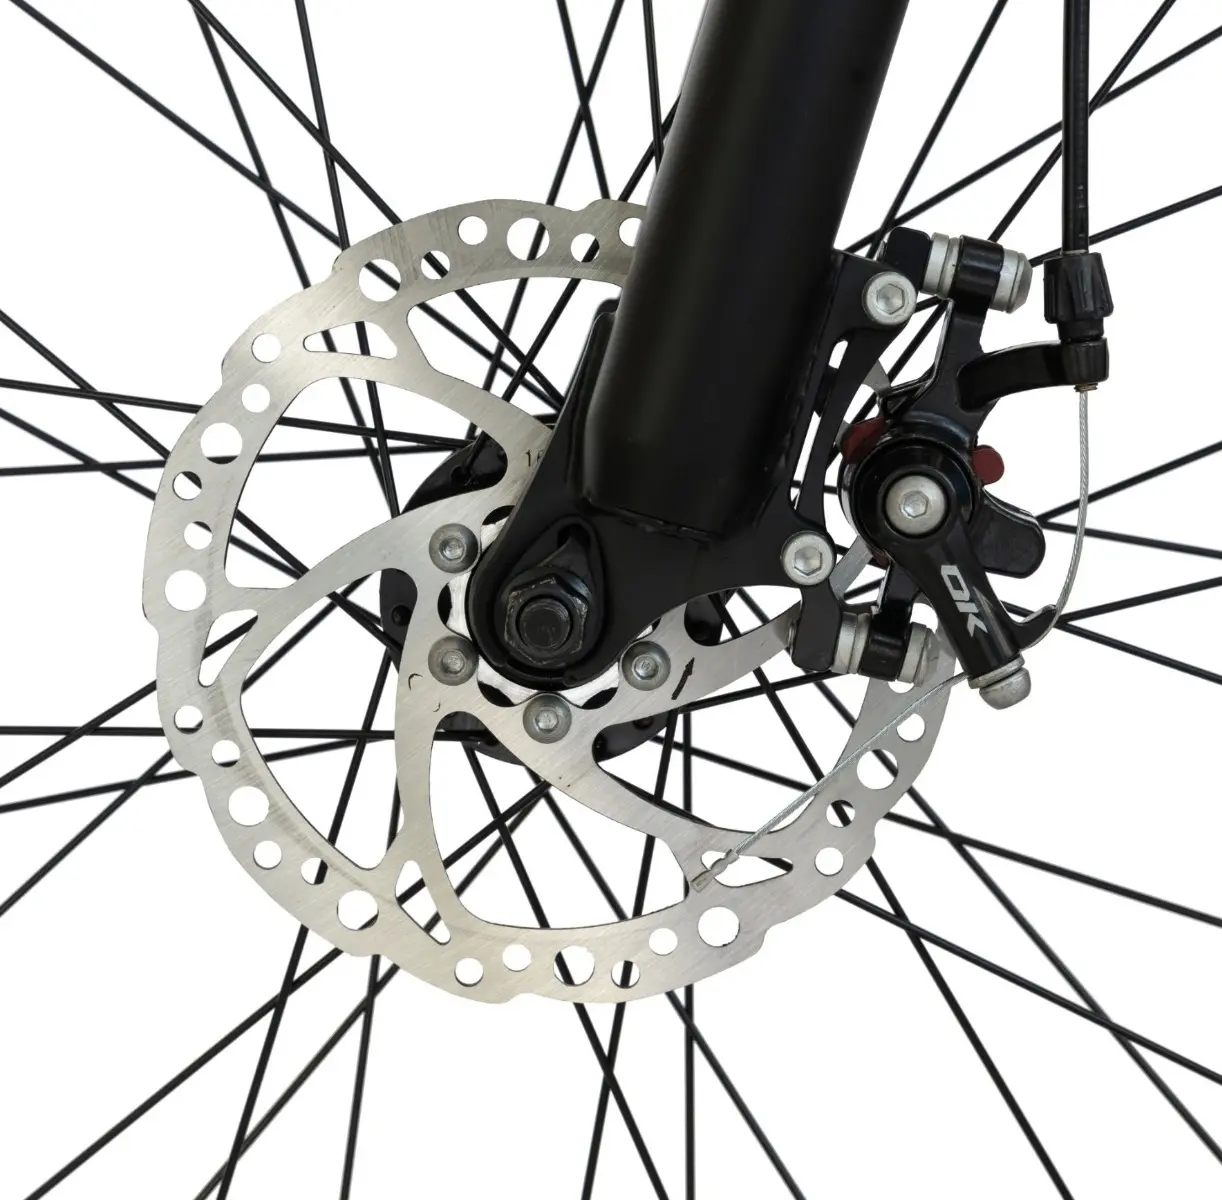 Bicicleta MTB Carpat C2758C, aluminiu, 27.5